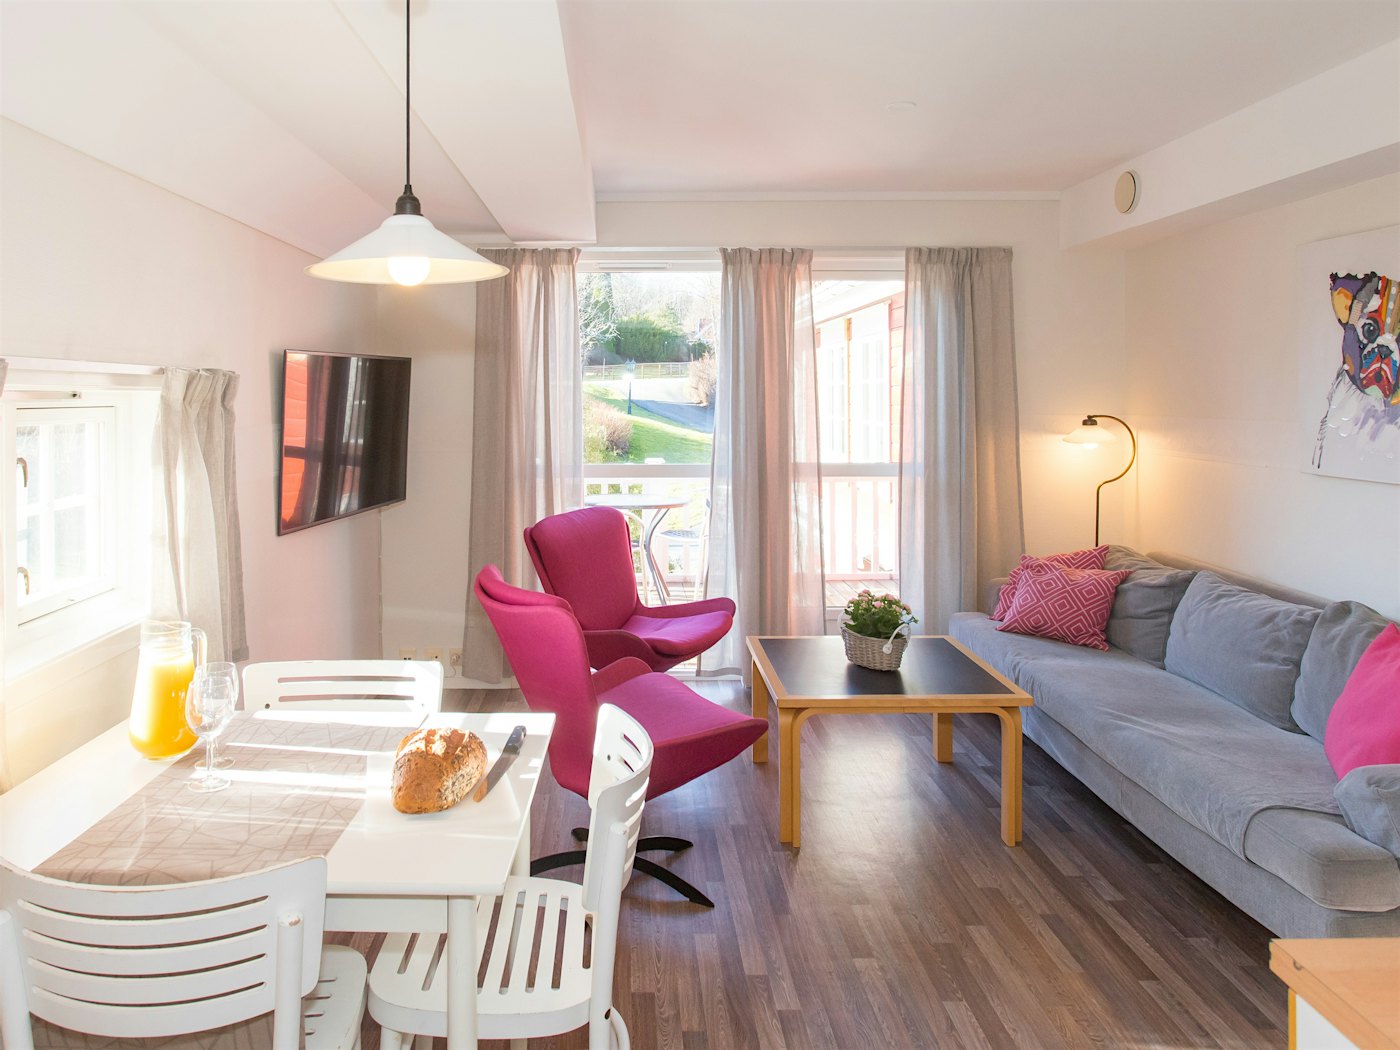 Lyst og åpent rom med mye naturlig lys fra store vinduer. To rosa lenestoler, sofa, TV og dekket spisebord for frokost. Foto